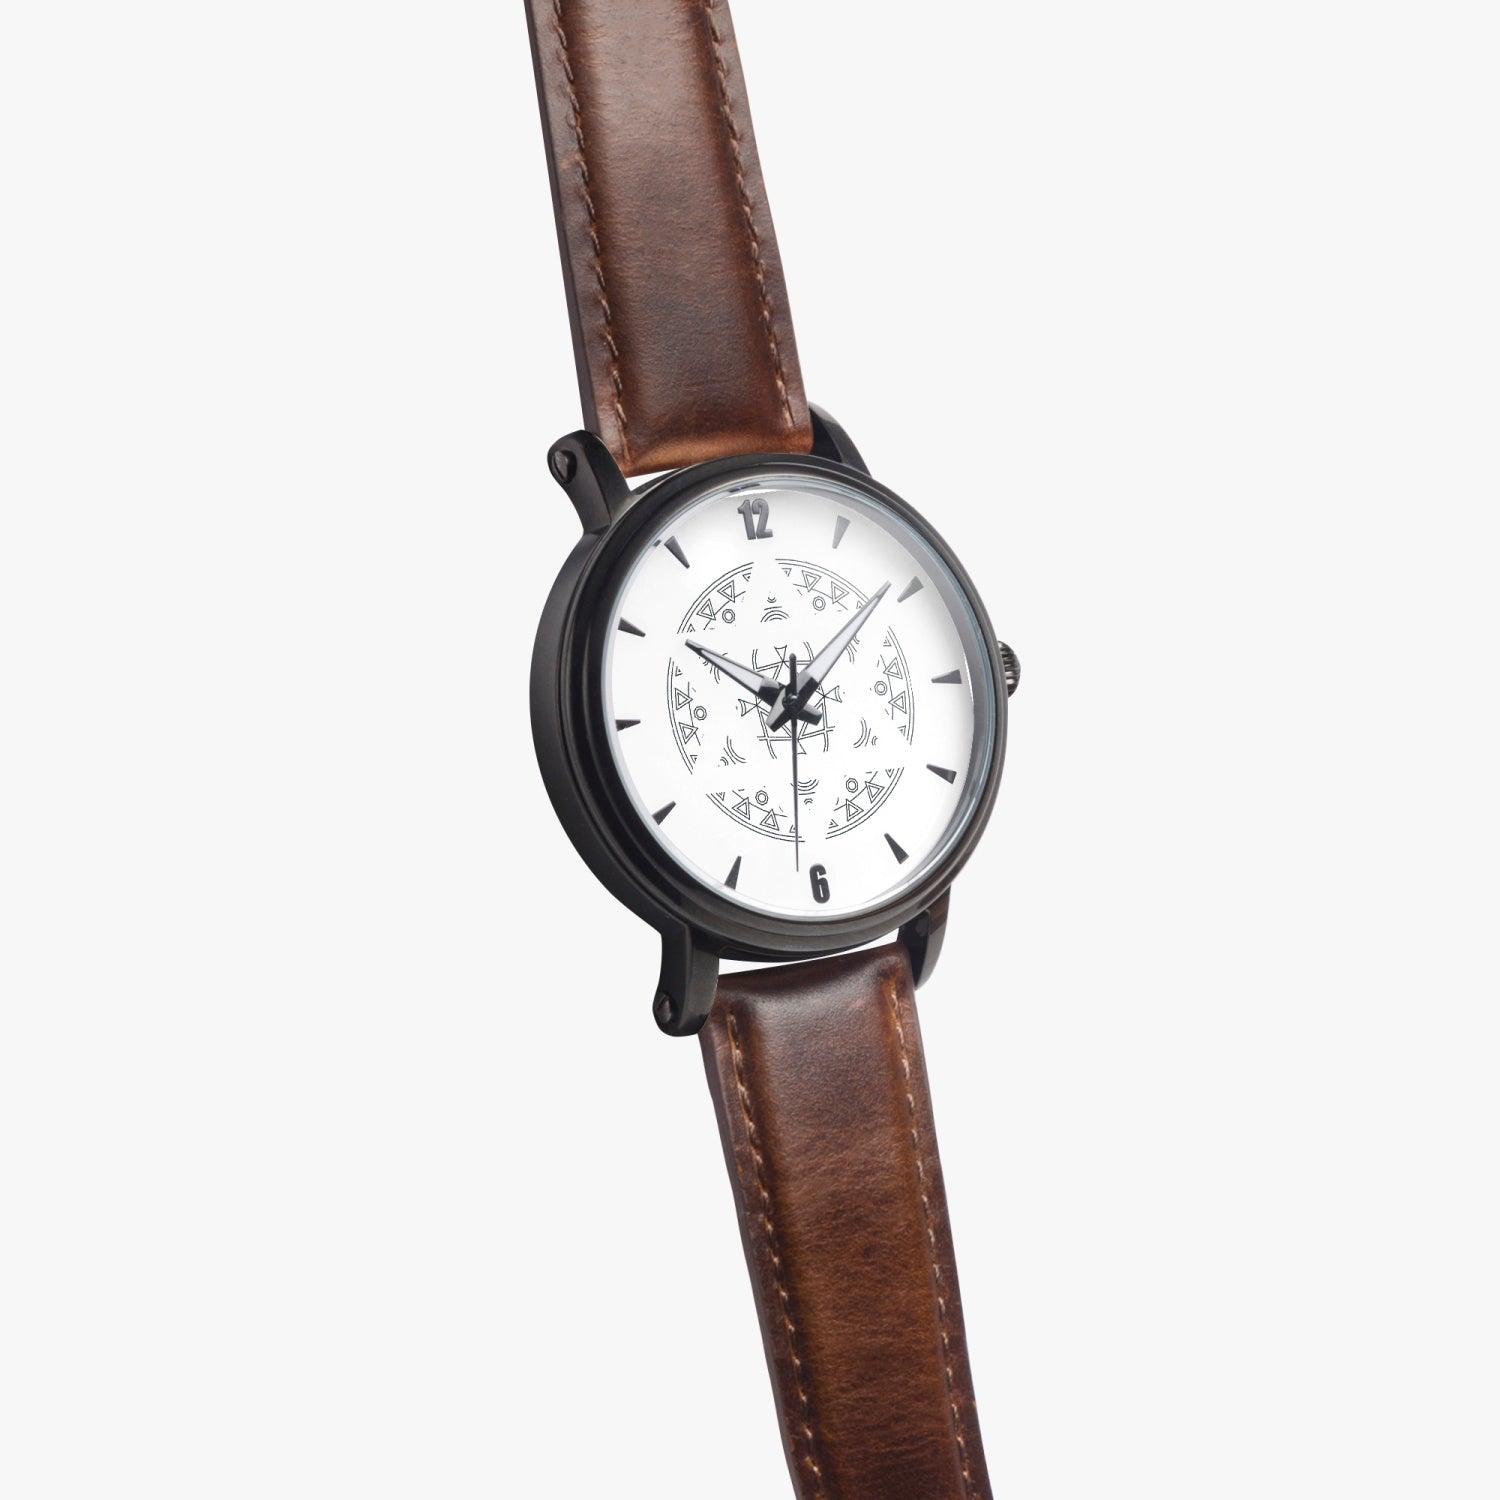 Mandala Star of David 46mm Automatic Watch